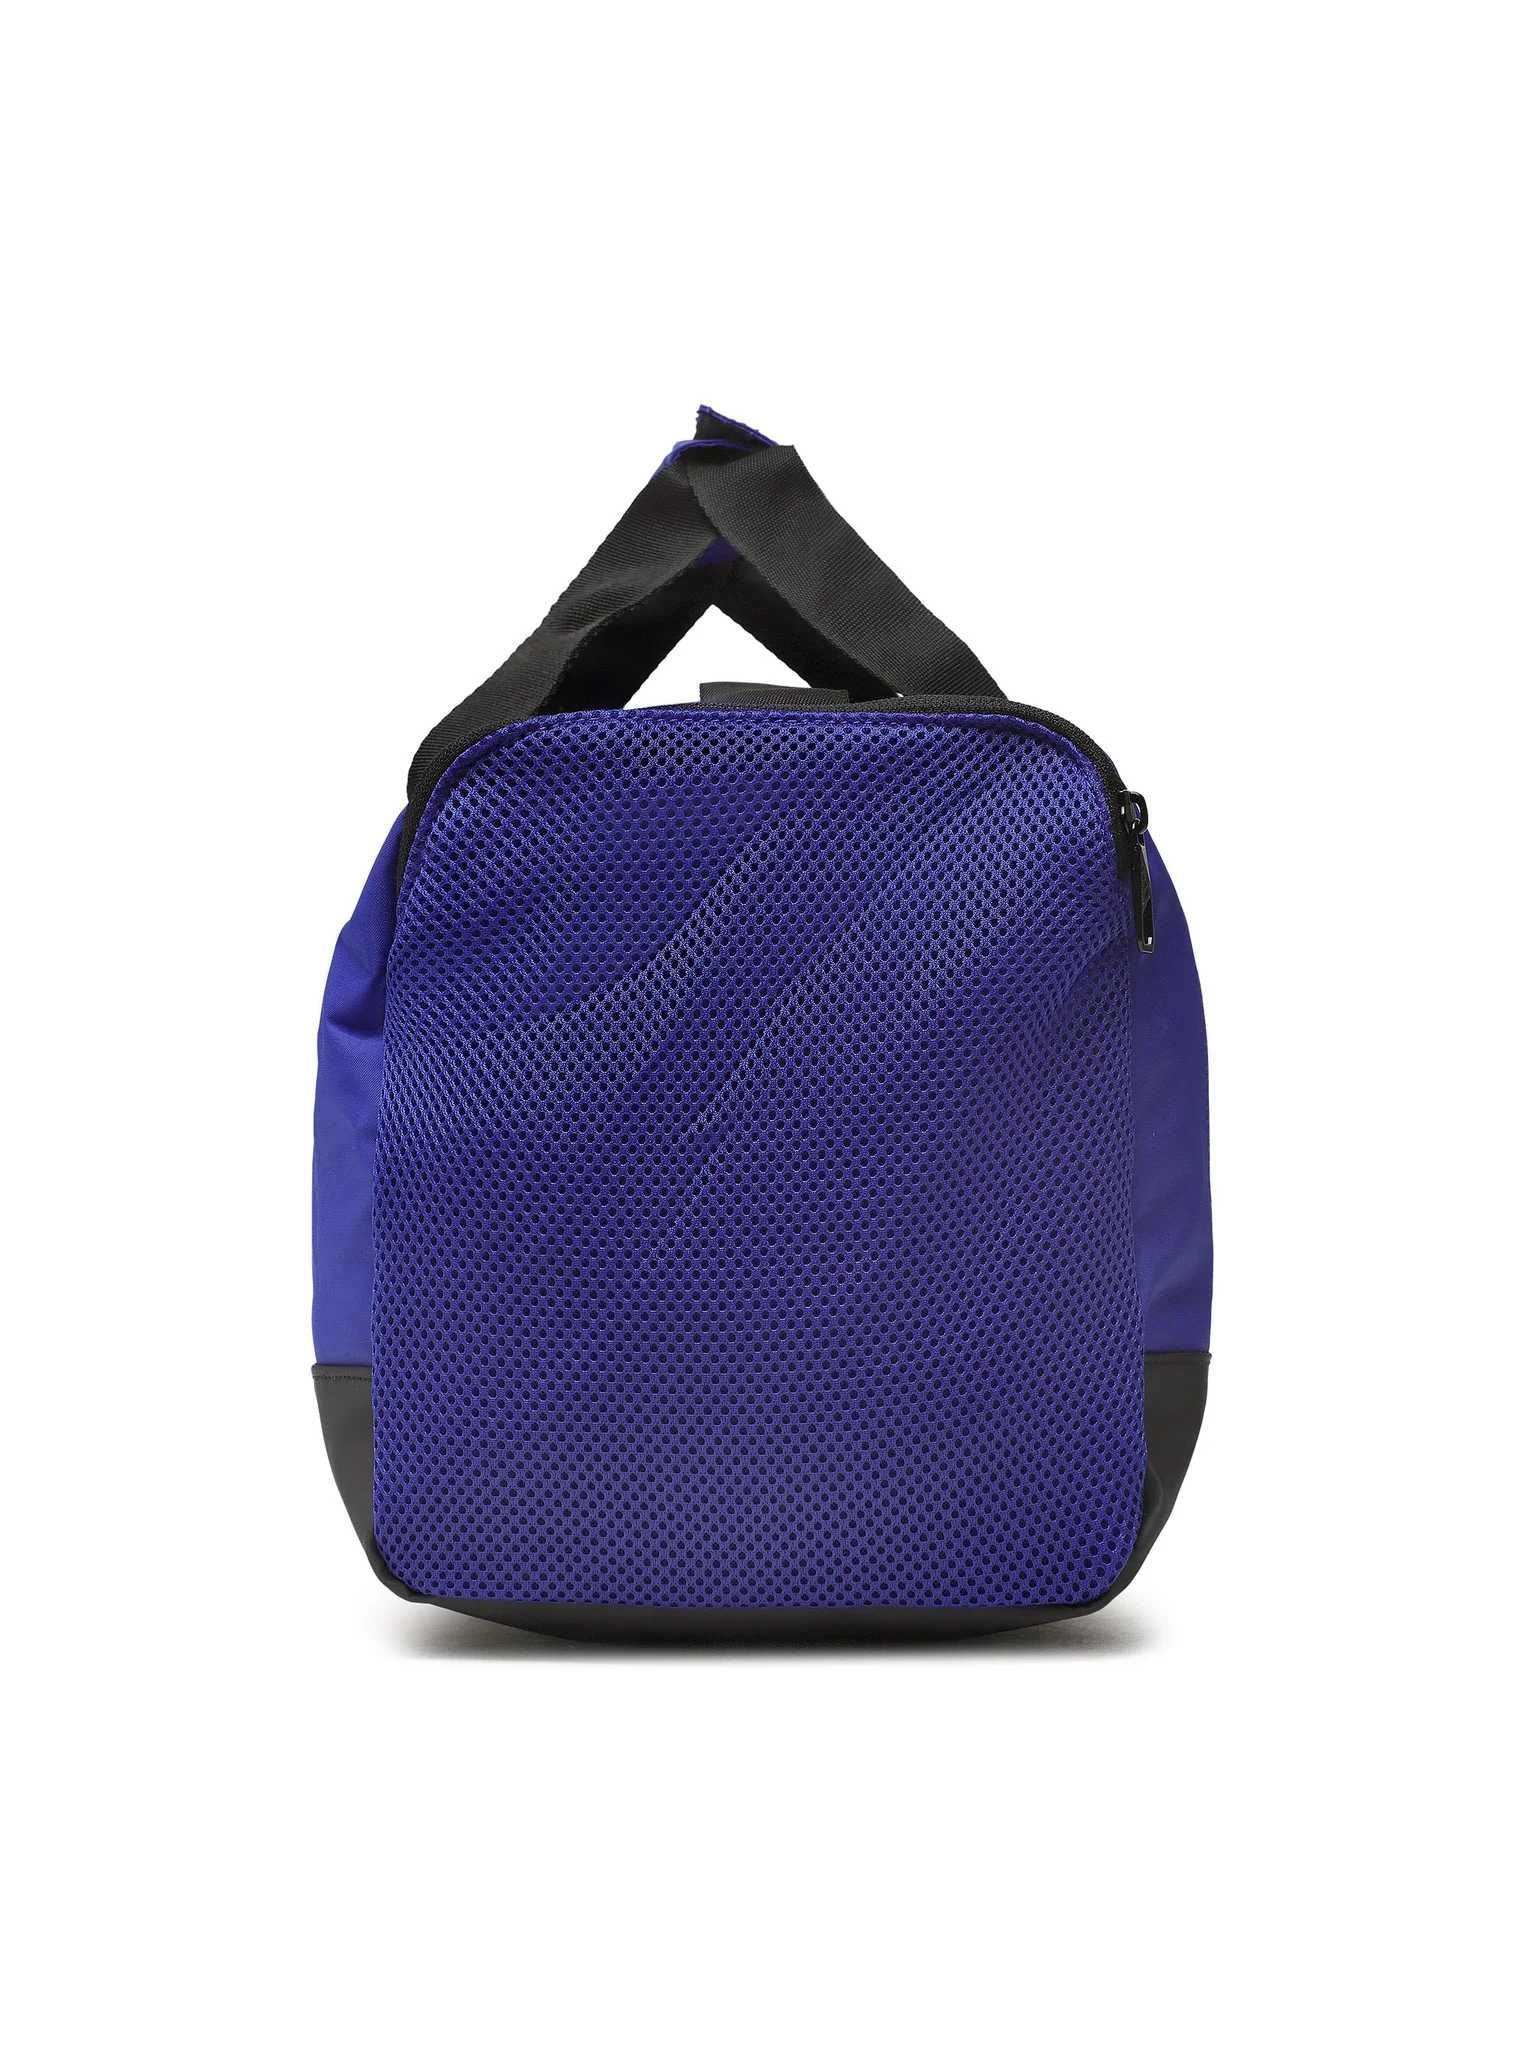 Спортивна сумка Adidas 4ATHLTS Duffel Bag Small (синя)